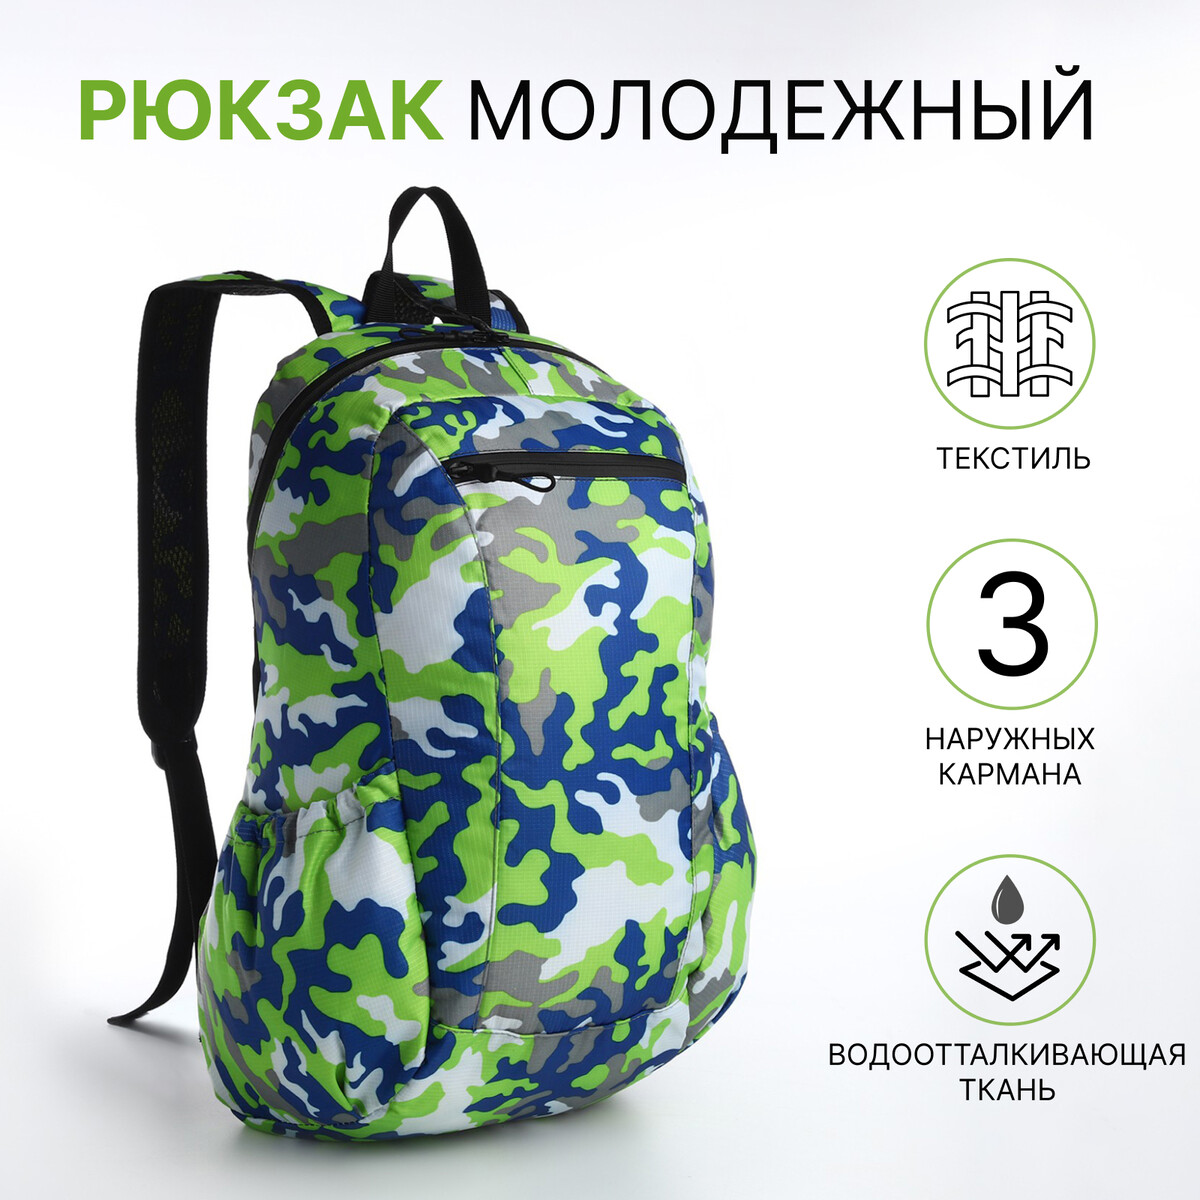 Рюкзак молодежный, водонепроницаемый на молнии, 3 кармана, цвет зеленый рюкзак молодежный из текстиля на молнии водонепроницаемый наружный карман зеленый